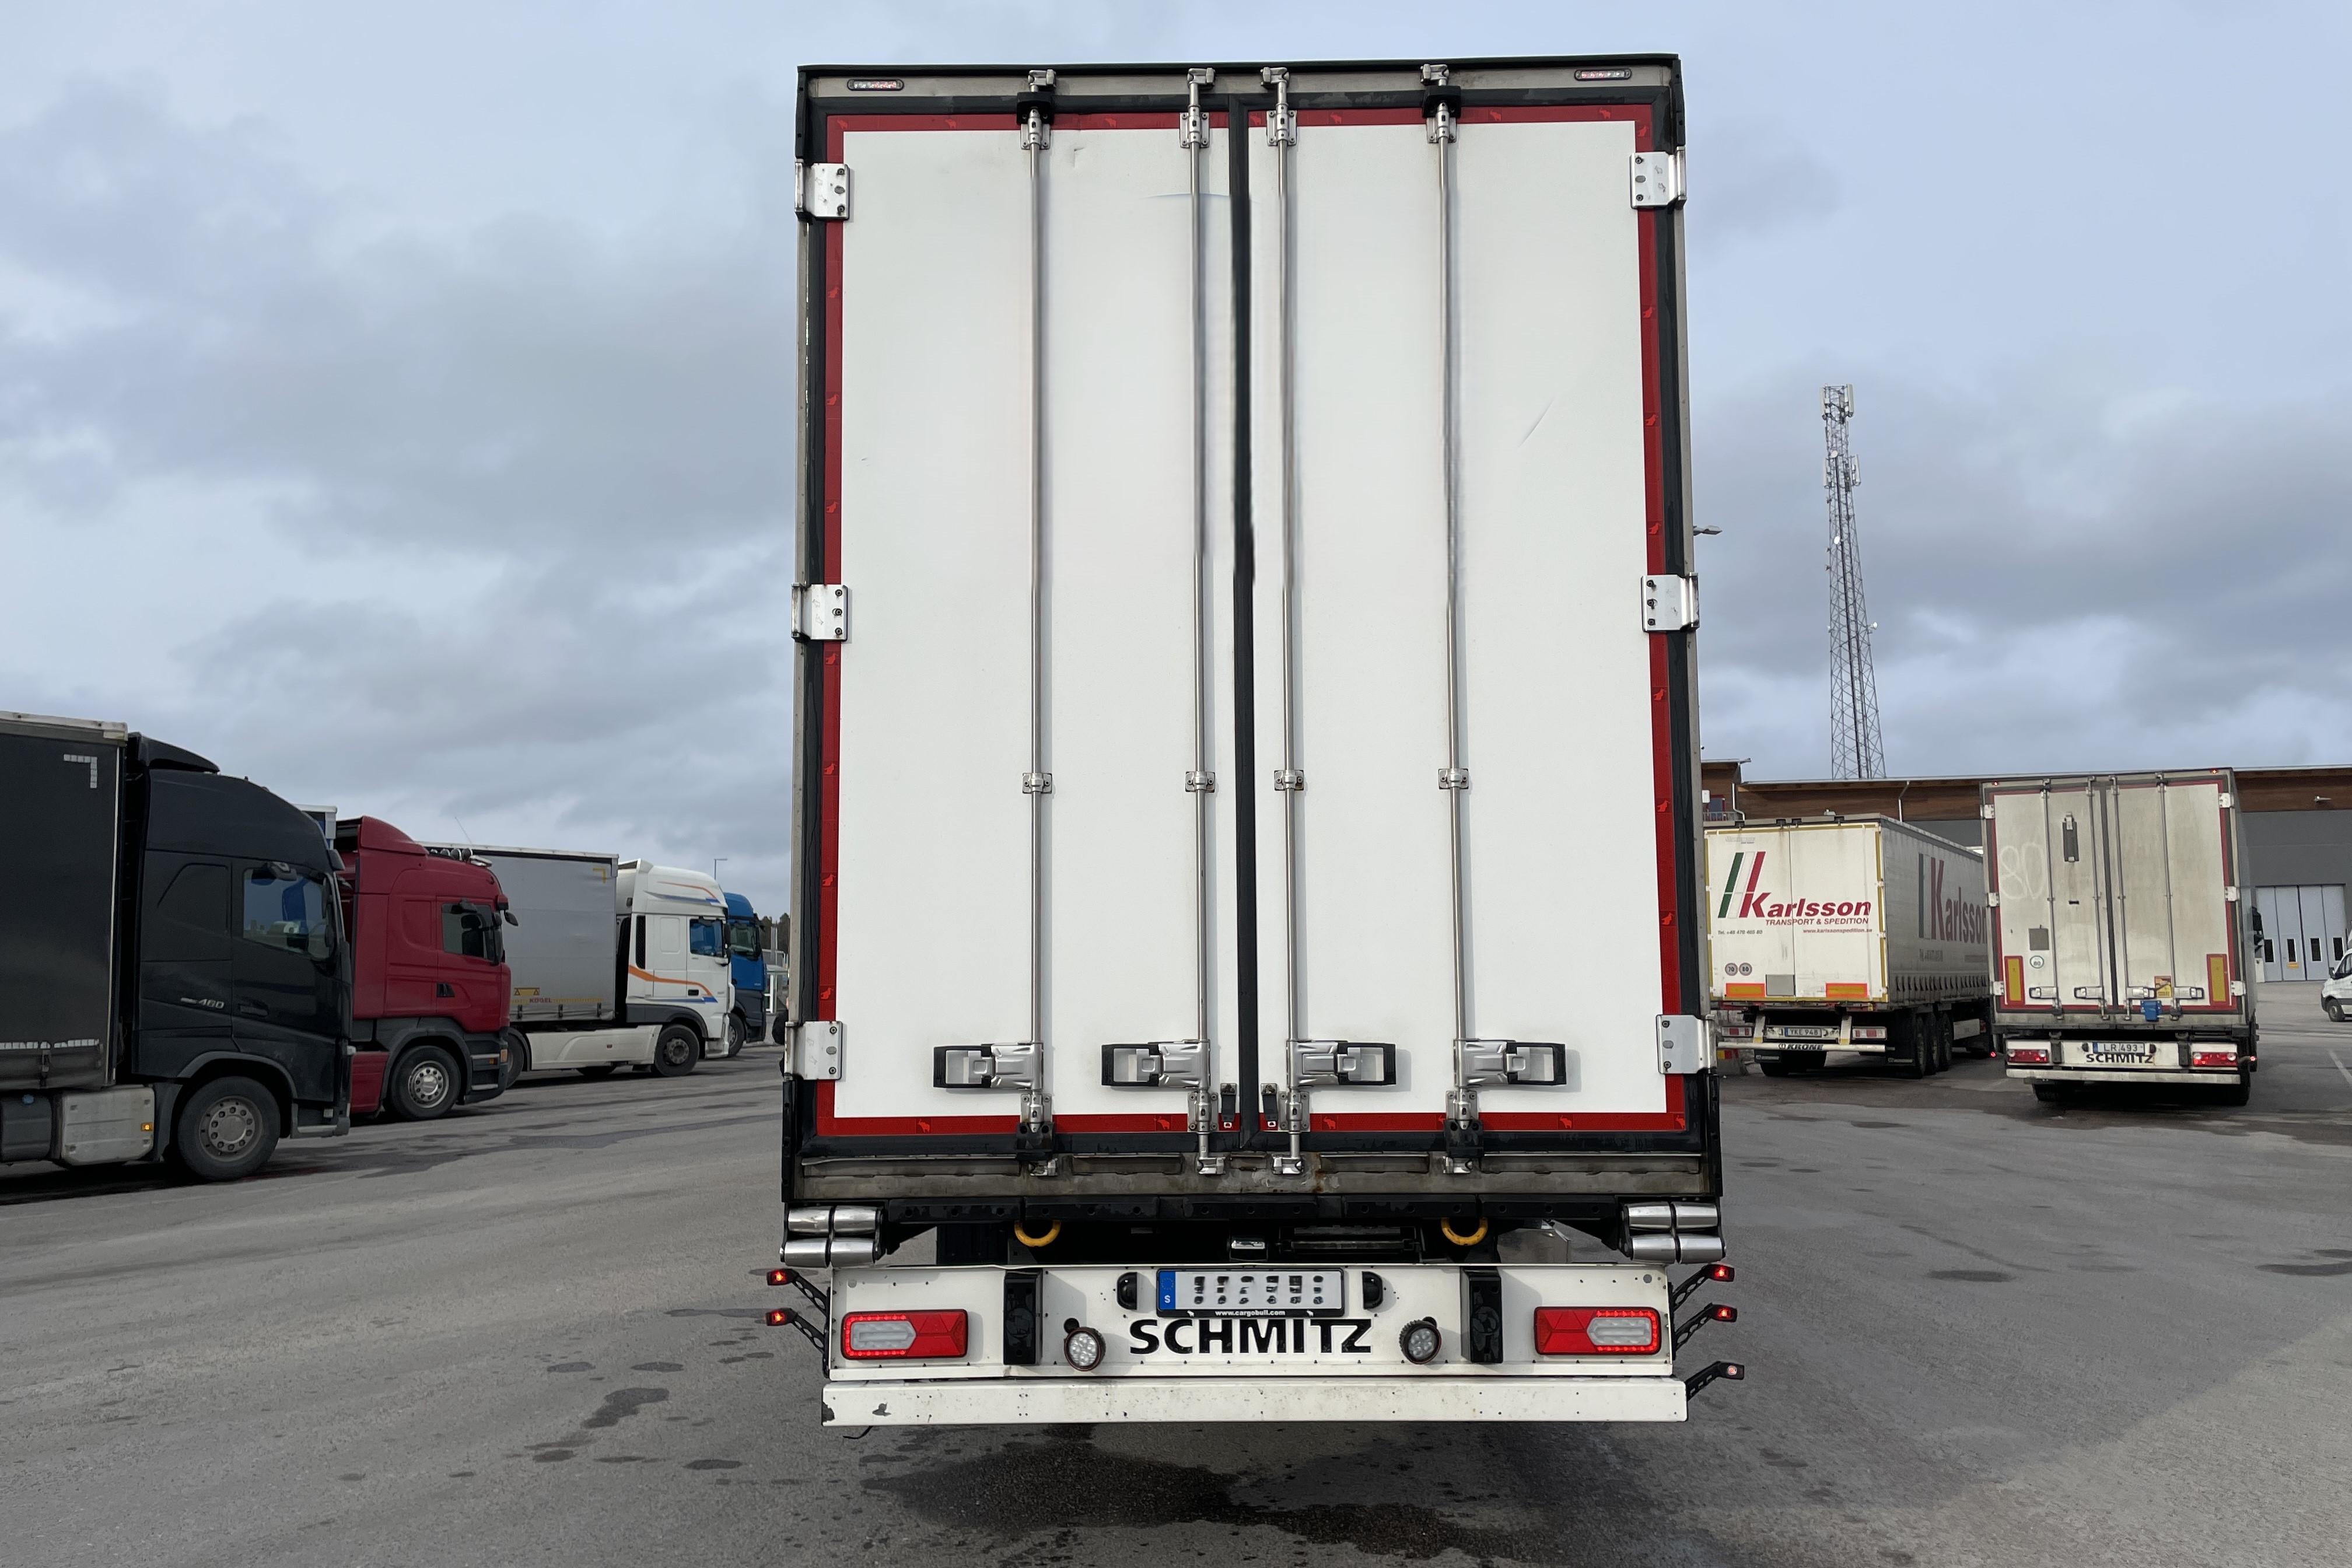 Scania S730B6X2*4NB - 476 482 km - Automaatne - sinine - 2016